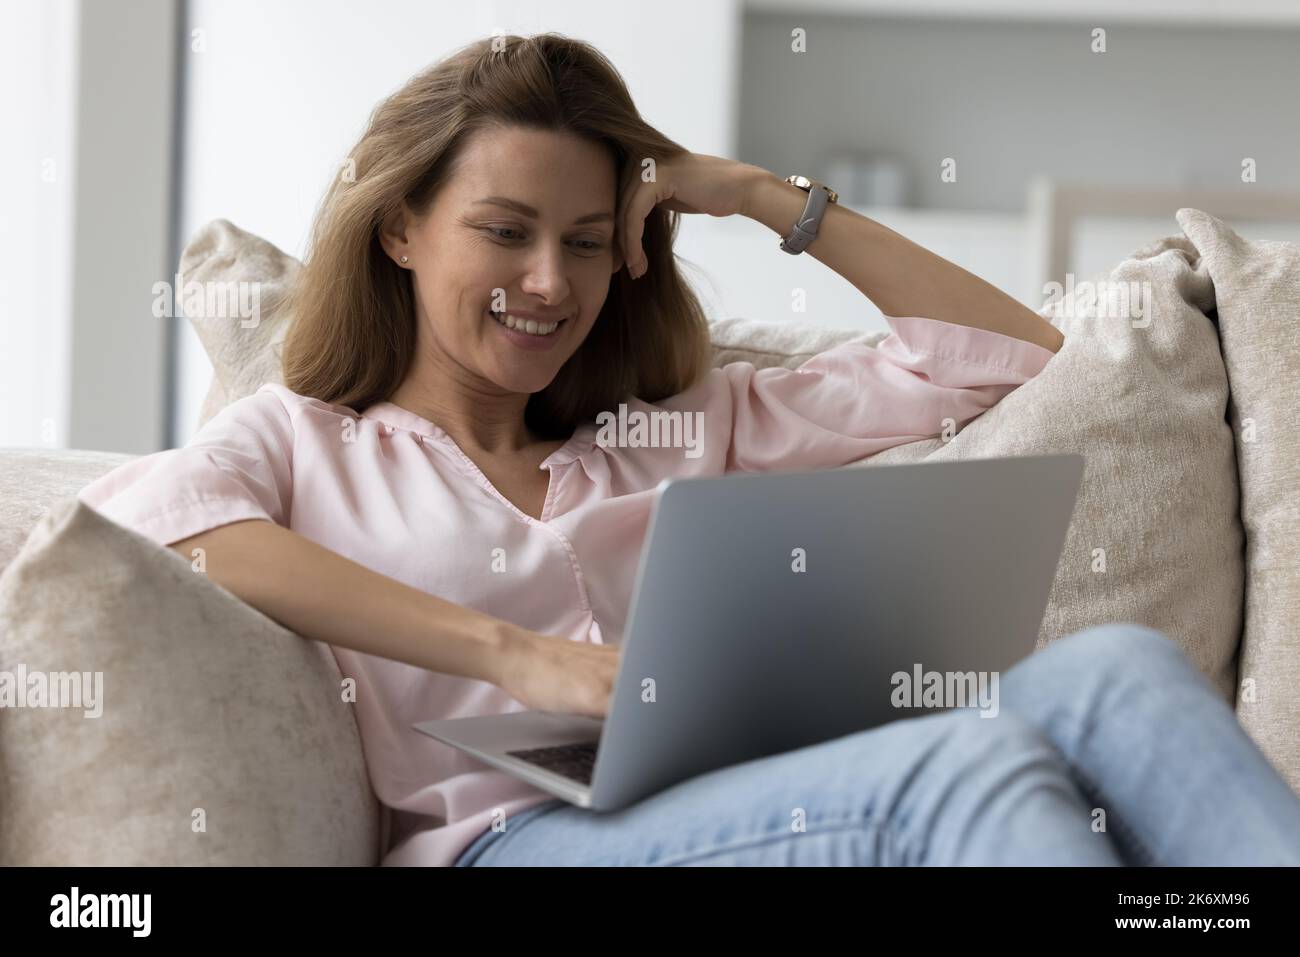 Une femme attirante se détend sur des coussins confortables avec un ordinateur portable Banque D'Images